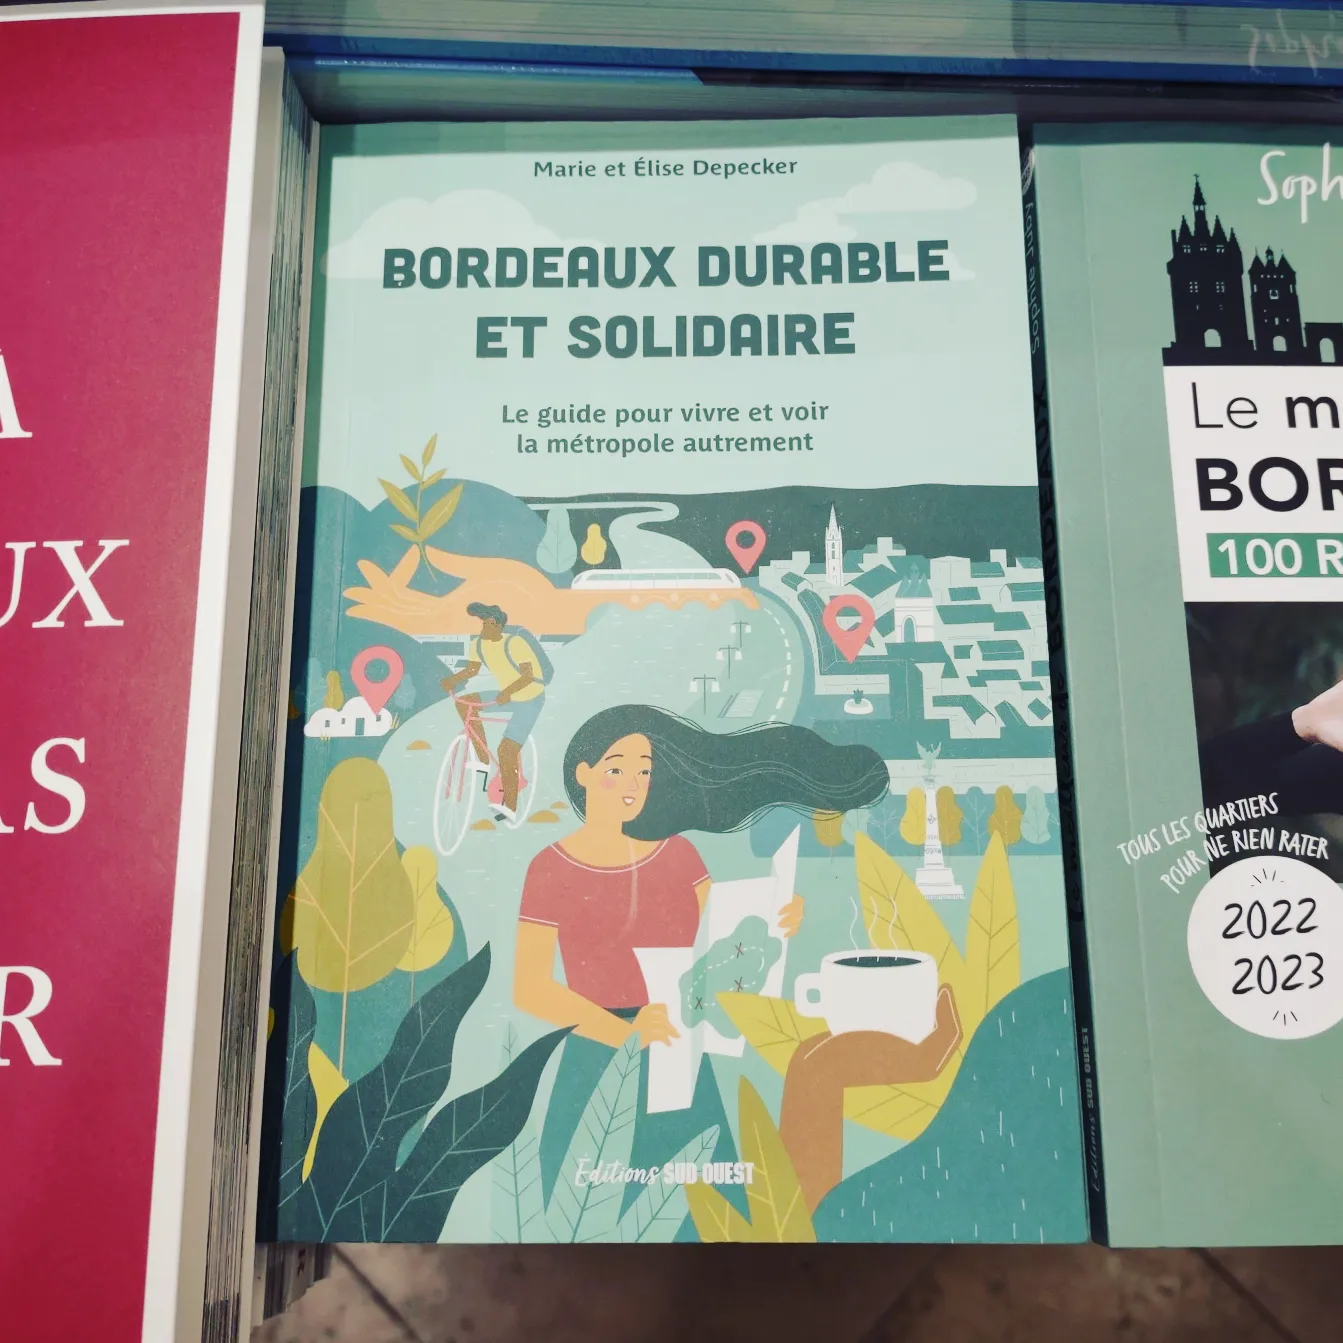 Guide Bordeaux durable et solidaire